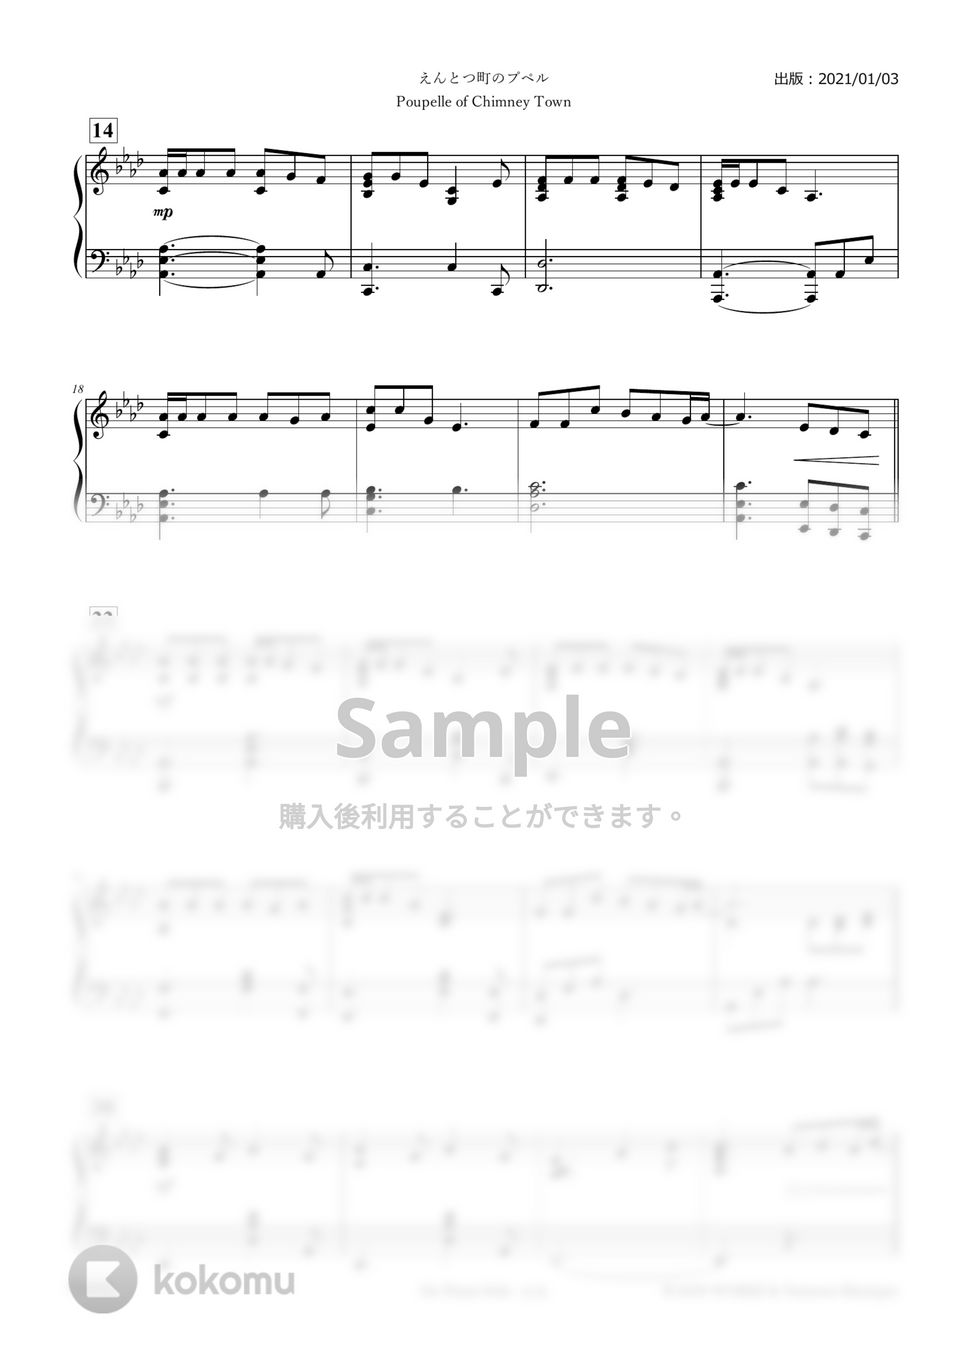 エンドクレジット版 - えんとつ町のプペル (ピアノソロ・上級) by 正村恵